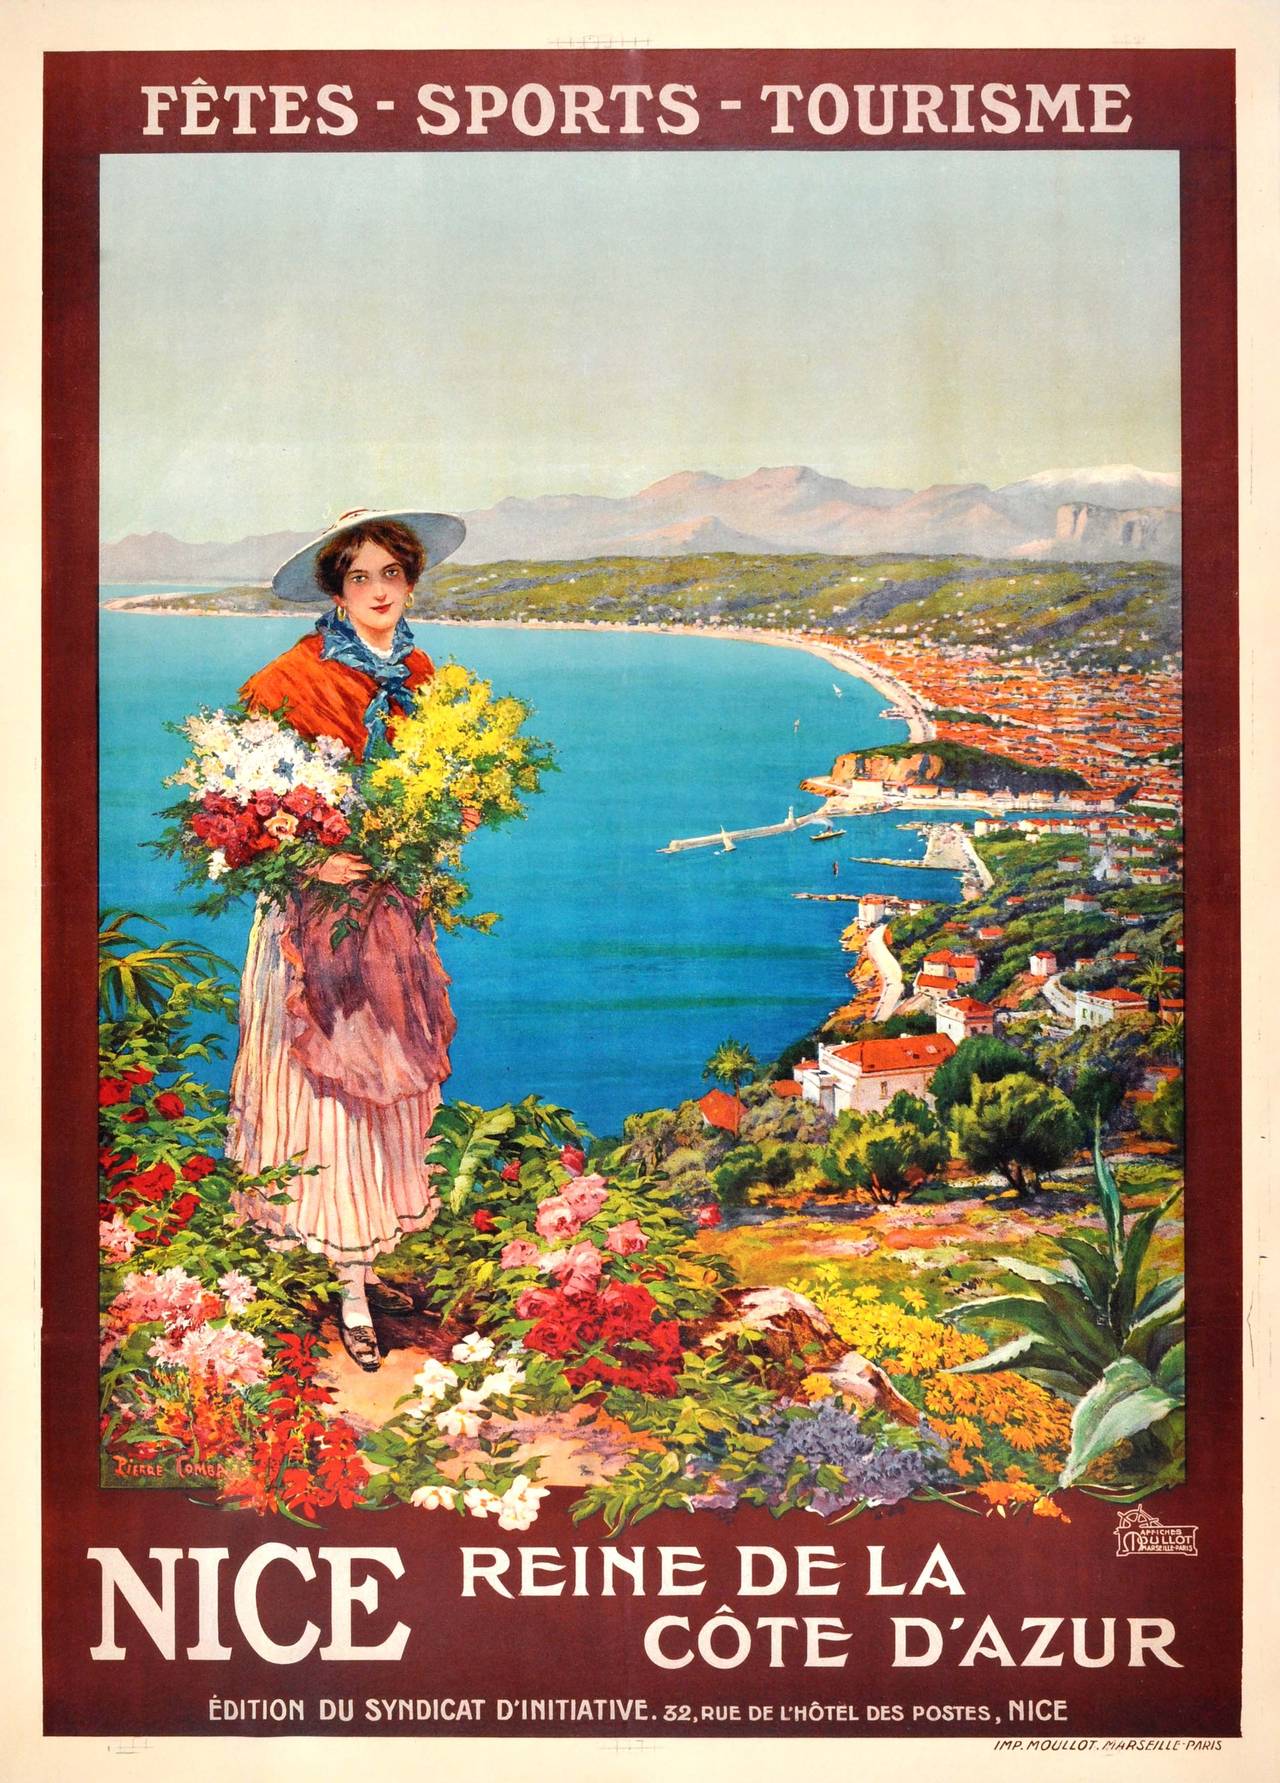 Pierre Comba Print - Original Vintage Poster: Nice Reine de la Cote d'Azur - Queen of the Cote d'Azur